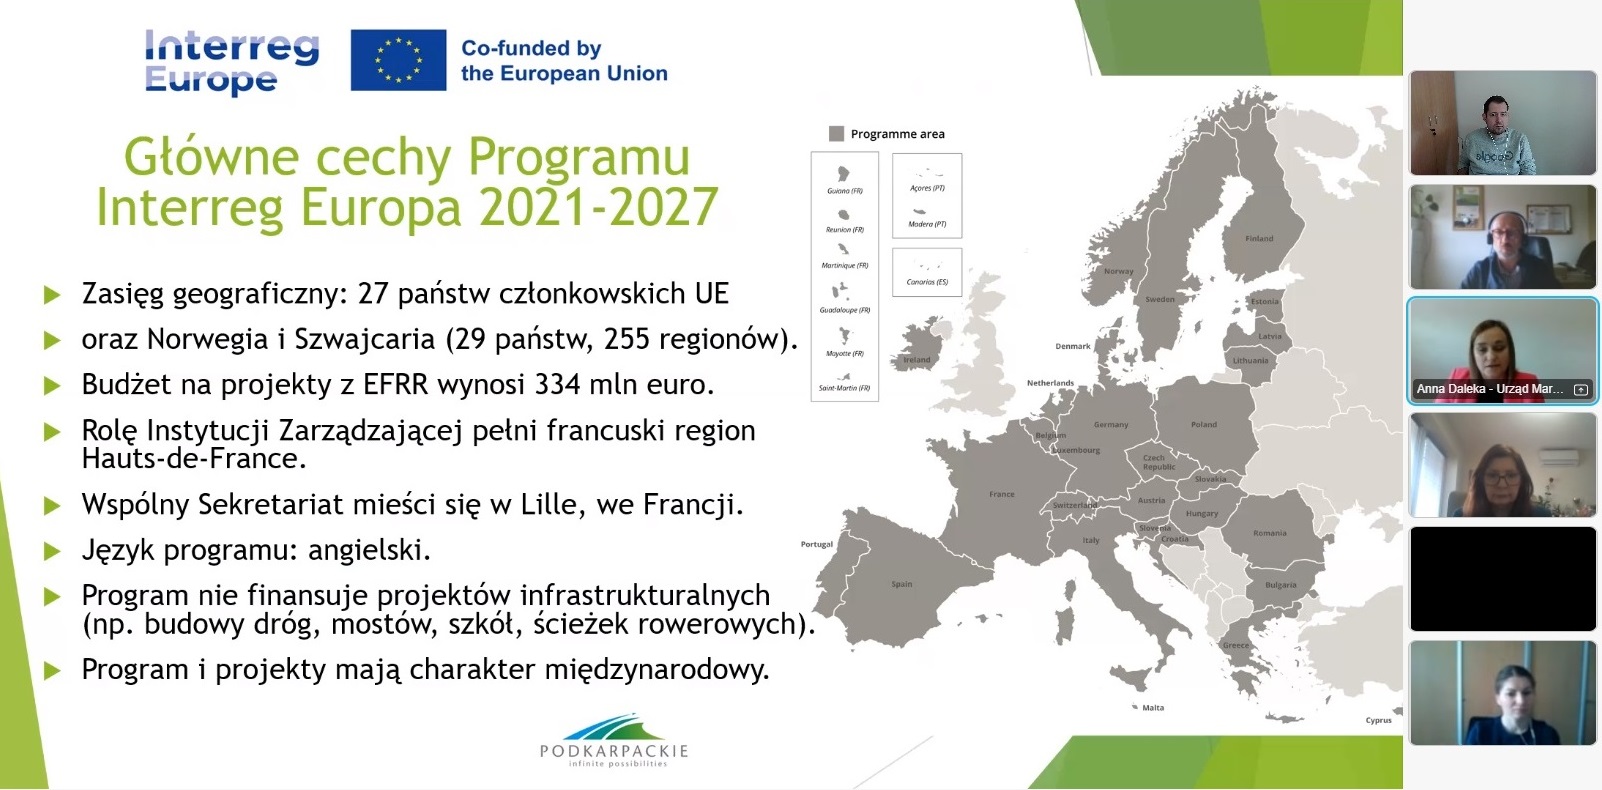 Prezentacja Anny Dalekiej nt. programu Interreg Europa 2021-2027